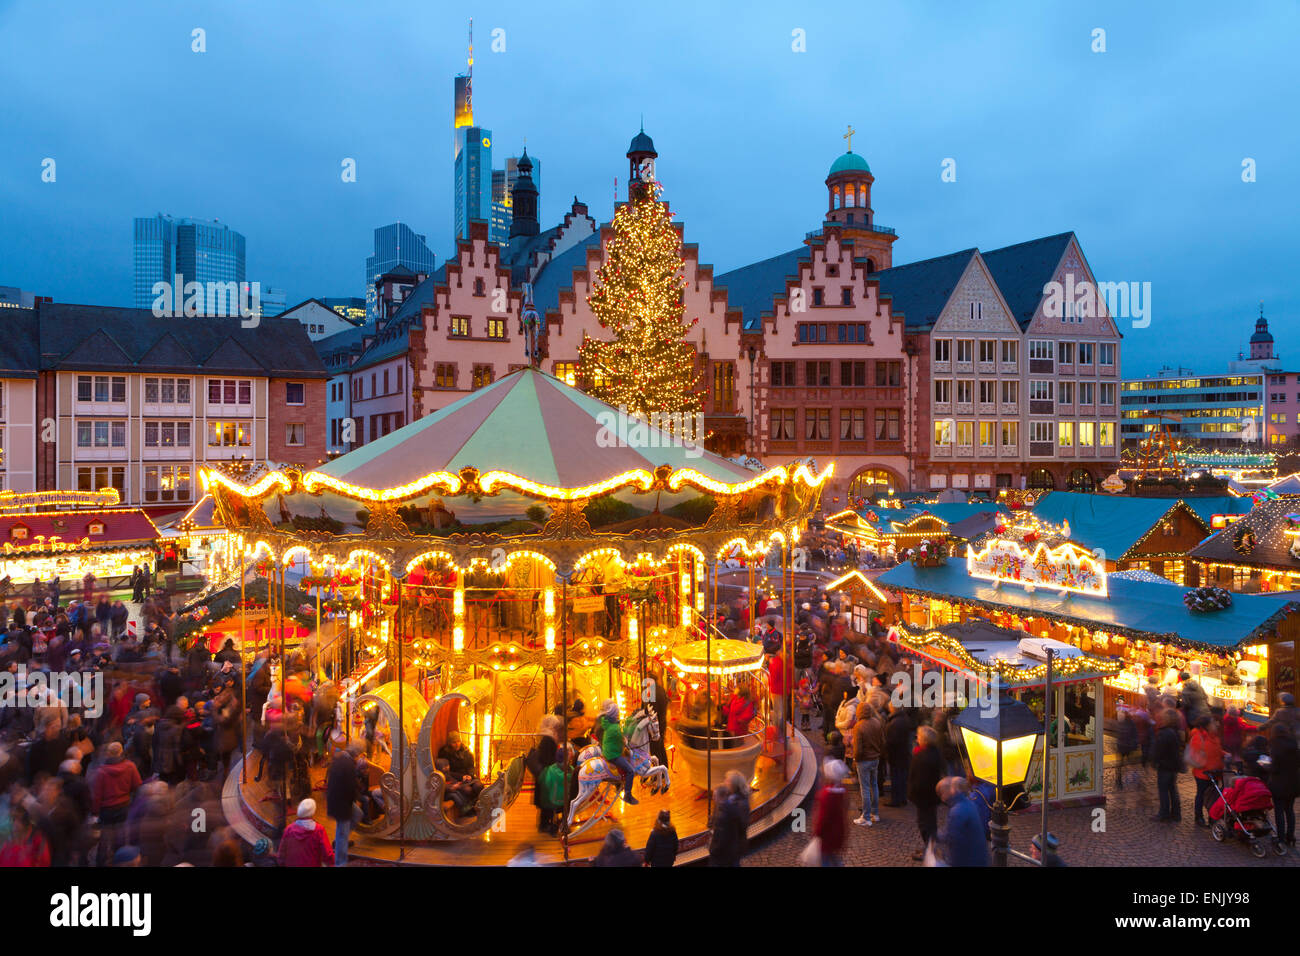 Marché de Noël à Romerberg, Francfort, Allemagne, Europe Banque D'Images